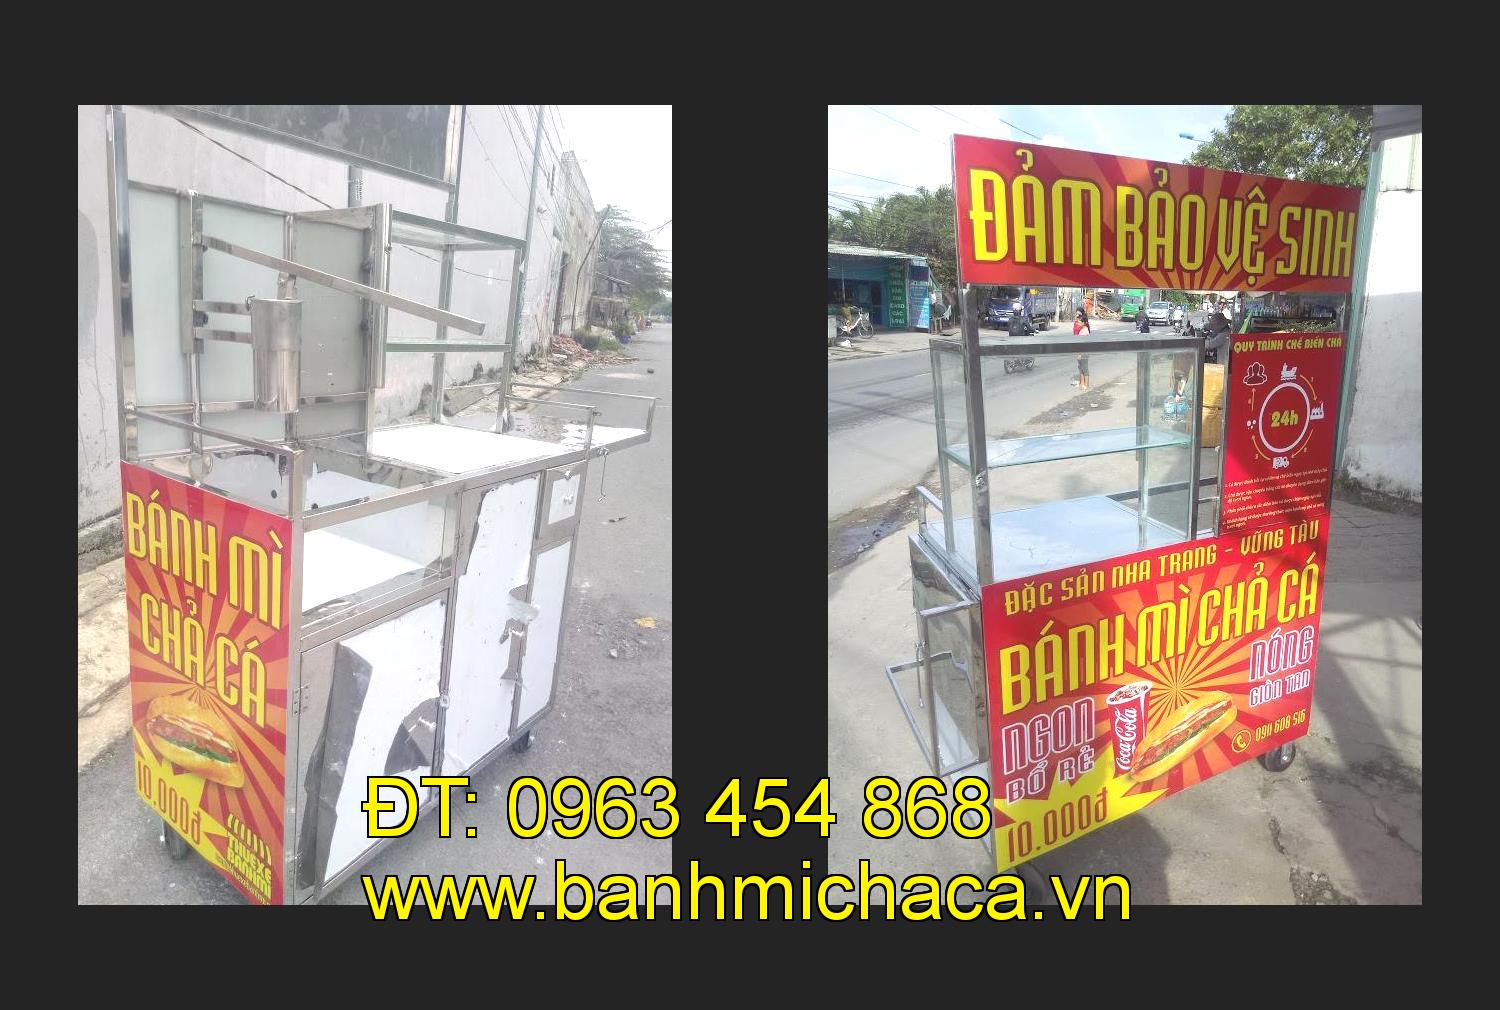 Bán xe bánh mì chả cá tại tỉnh Lào Cai